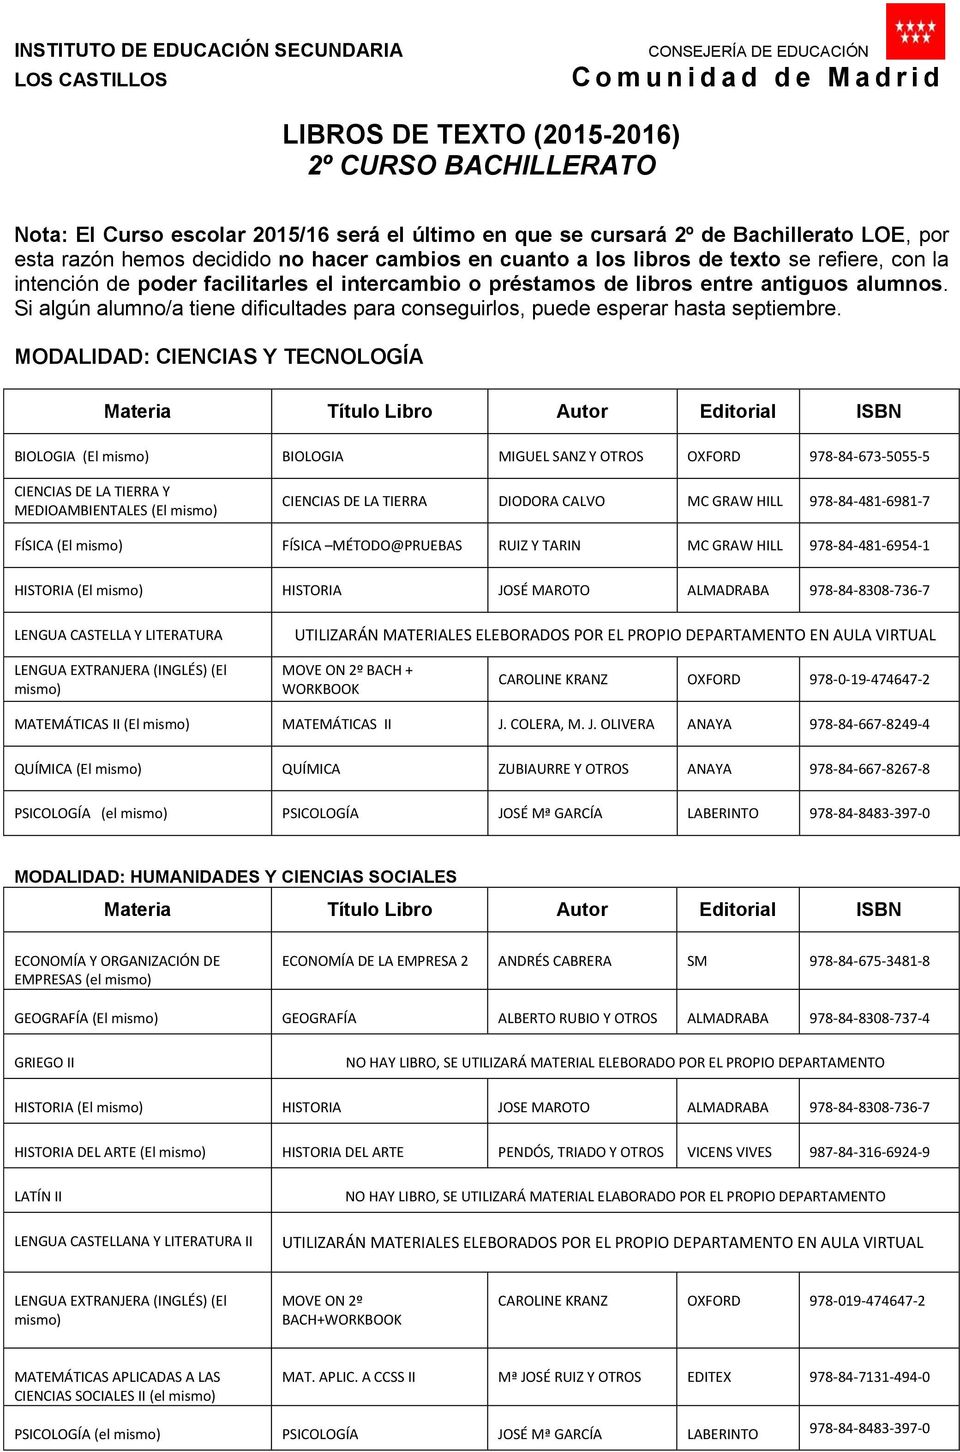 MODALIDAD: CIENCIAS Y TECNOLOGÍA BIOLOGIA (El mismo) BIOLOGIA MIGUEL SANZ Y OXFORD 978-84-673-5055-5 CIENCIAS DE LA TIERRA Y MEDIOAMBIENTALES (El mismo) CIENCIAS DE LA TIERRA DIODORA CALVO MC GRAW